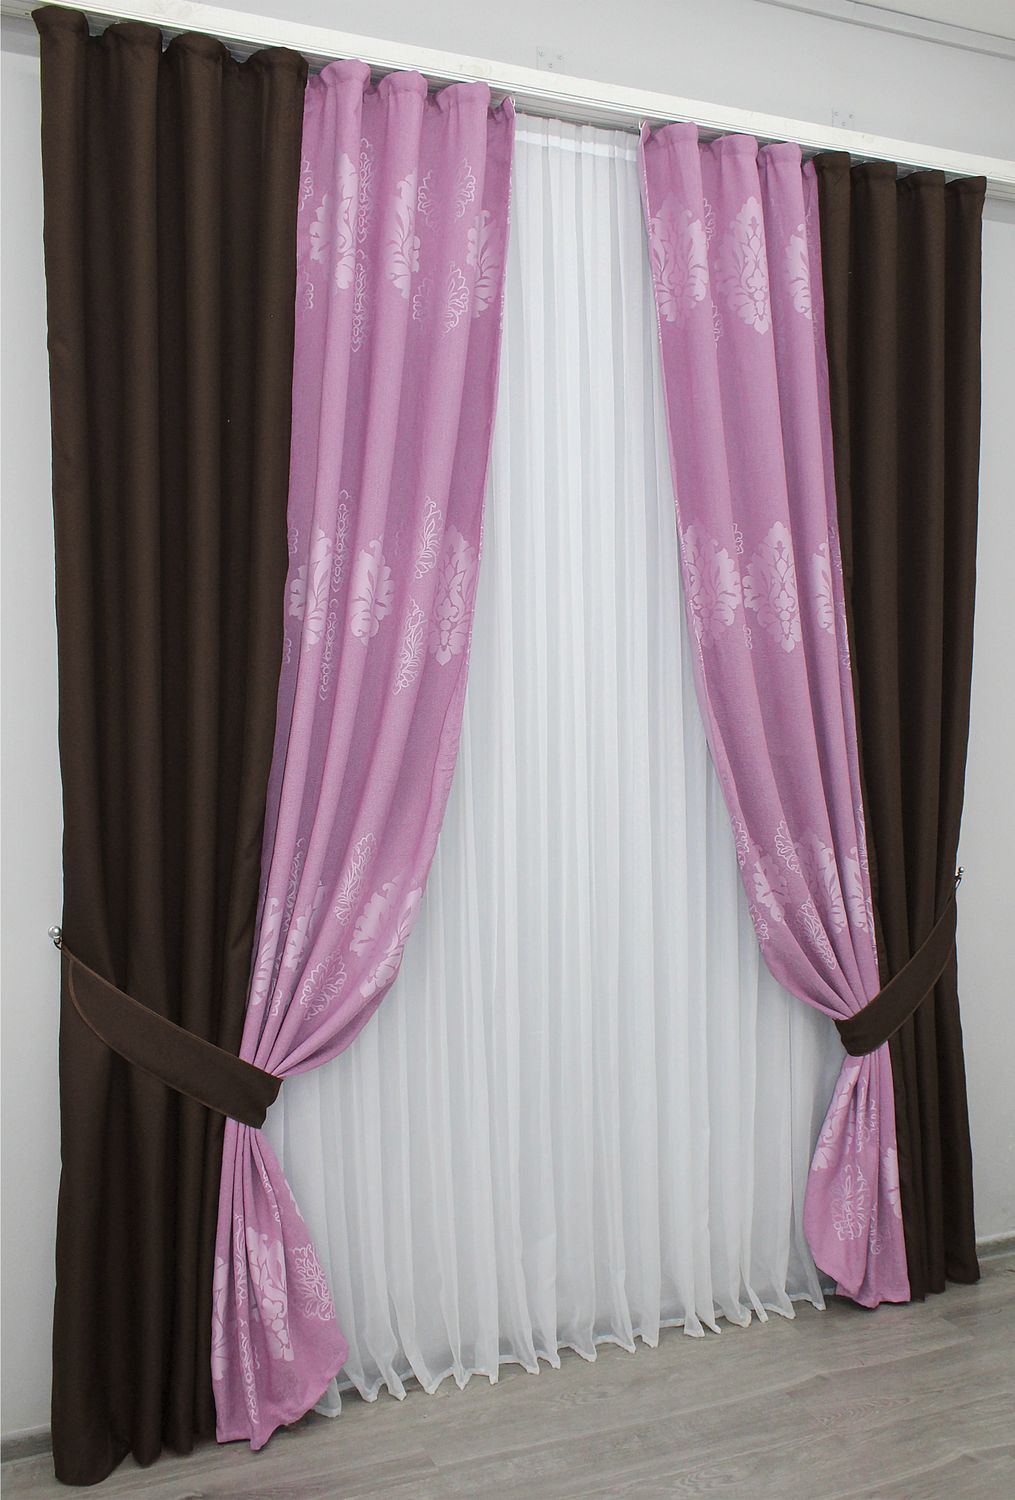 Комбинированные шторы из ткани лён-блэкаут цвет венге с розовым 014дк (291-1128ш), Венге с розовым, Комплект штор (2 шт. 2,0х2,7 м.), Классические, Длинные, 2 м., 2,7 м., 200, 270, 3 - 4 м., В комплекте 2 шт., Тесьма